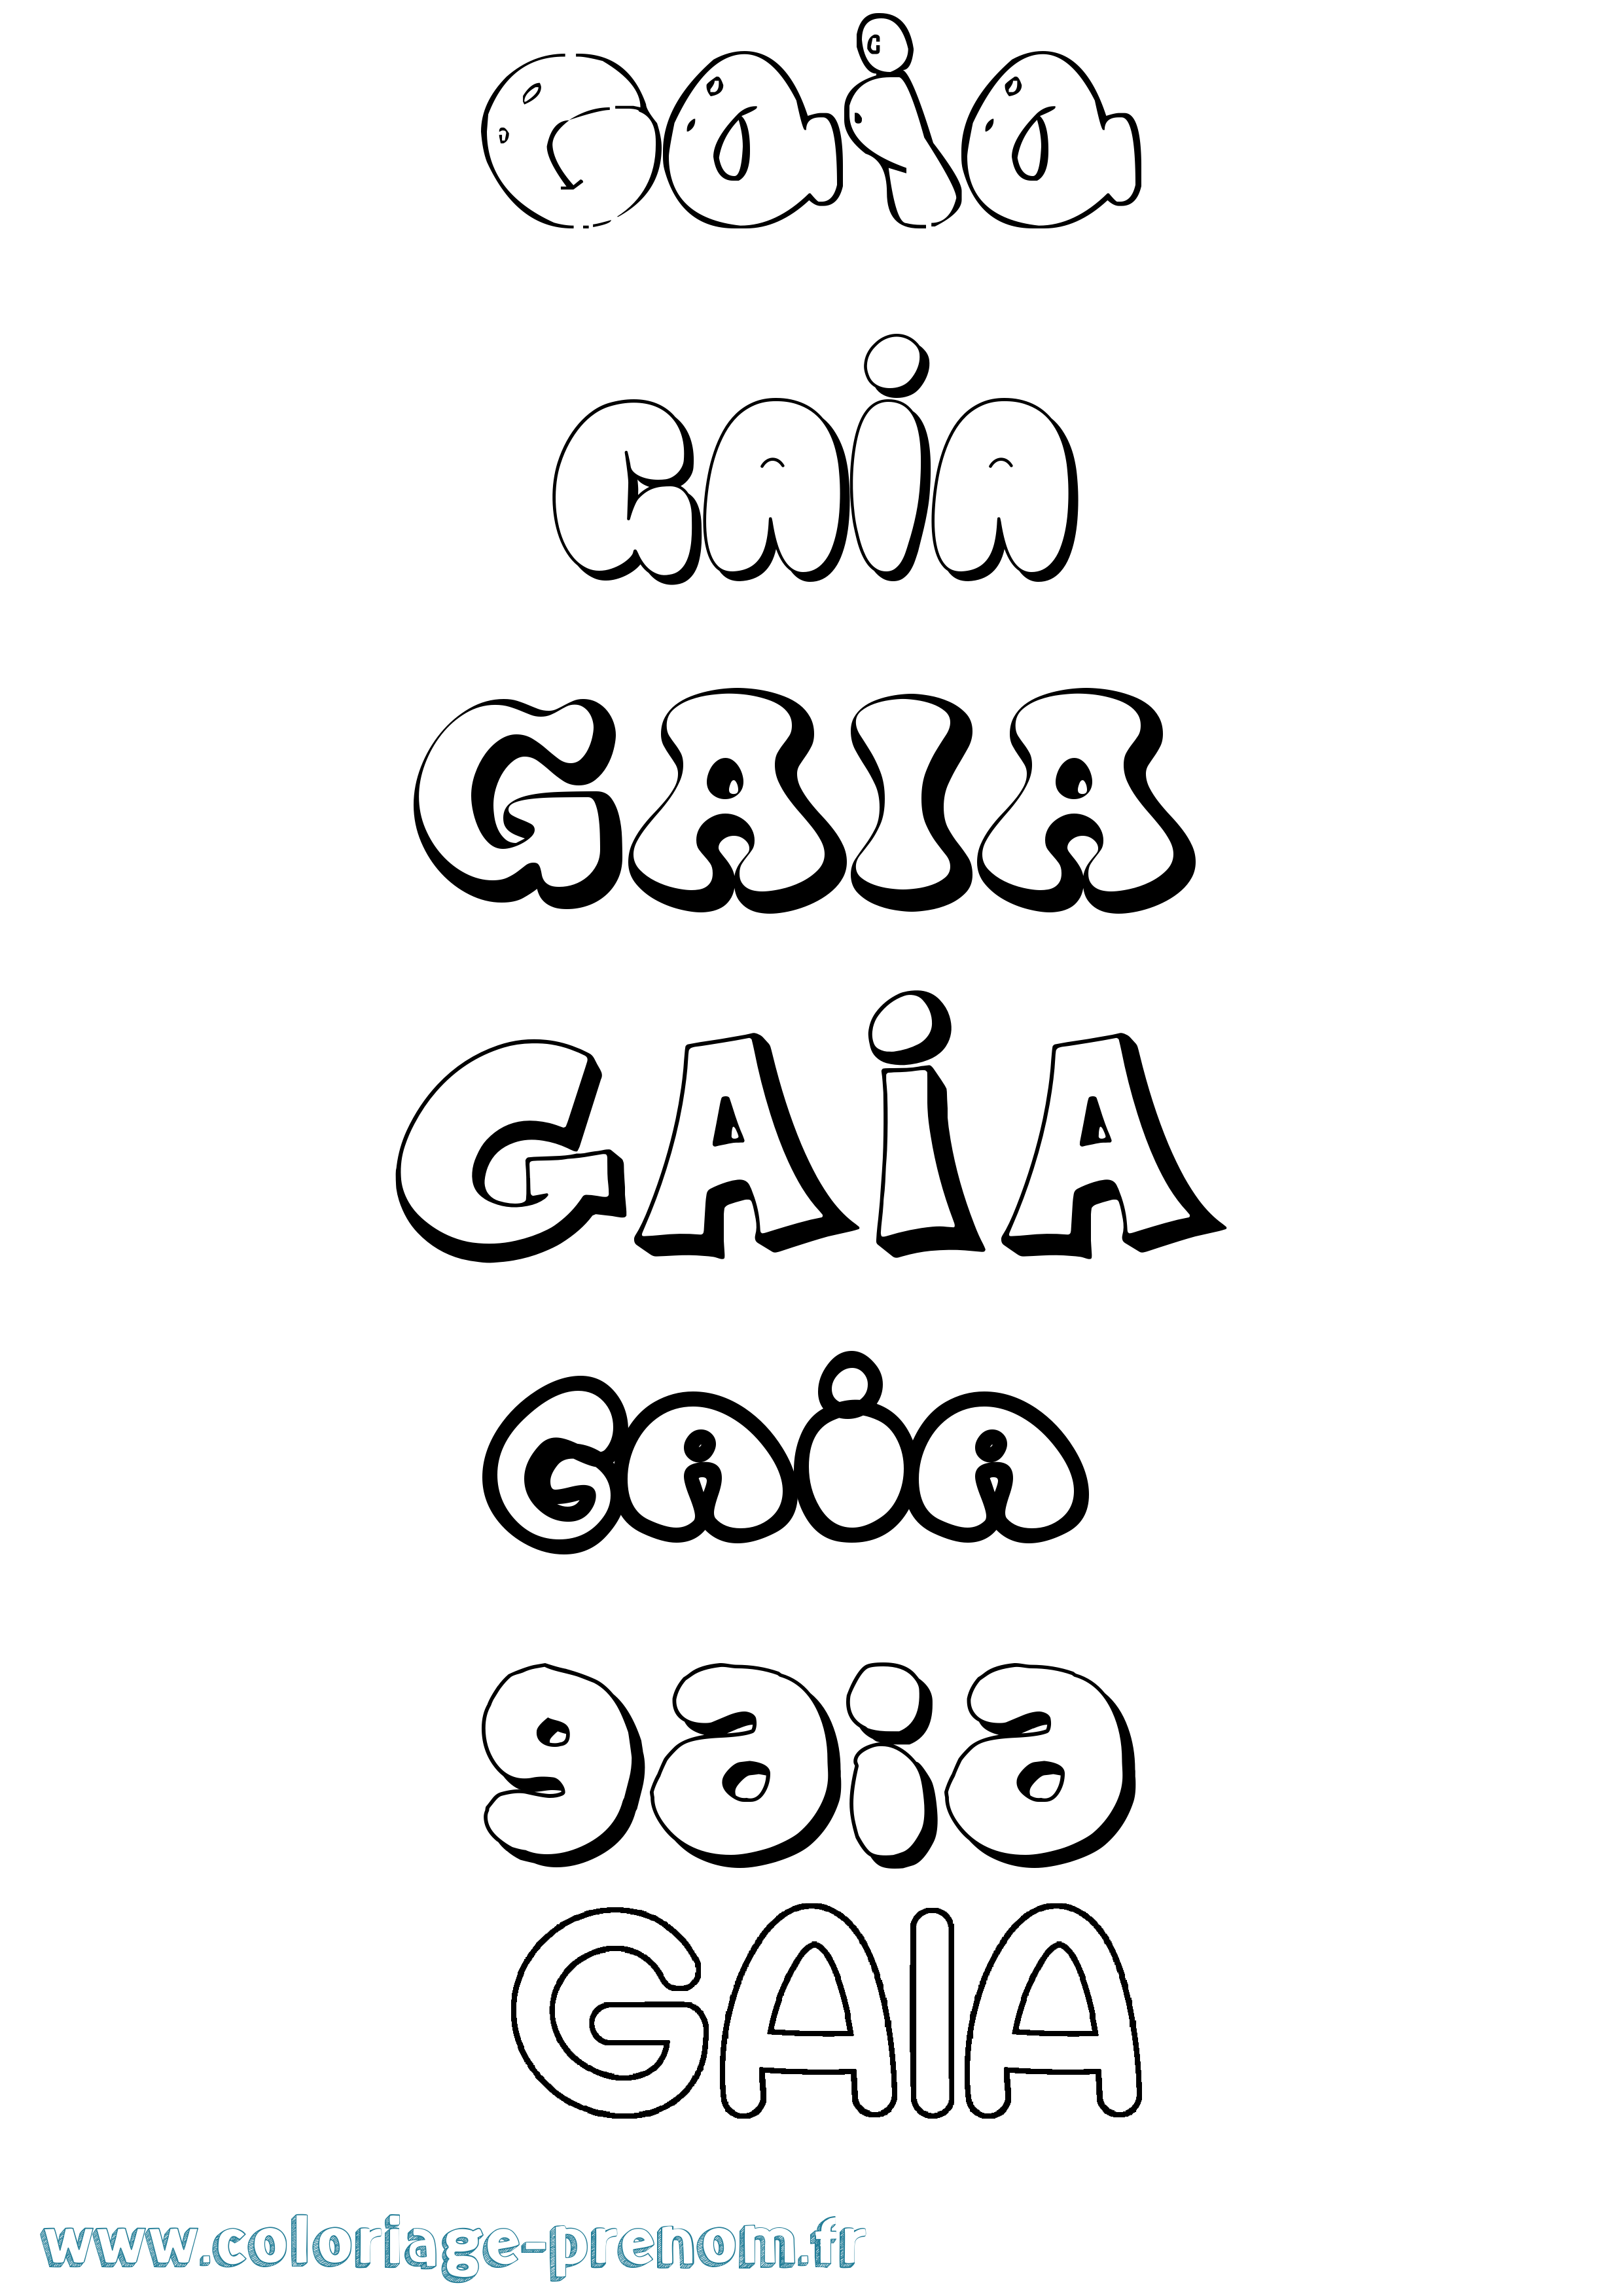 Coloriage prénom Gaia